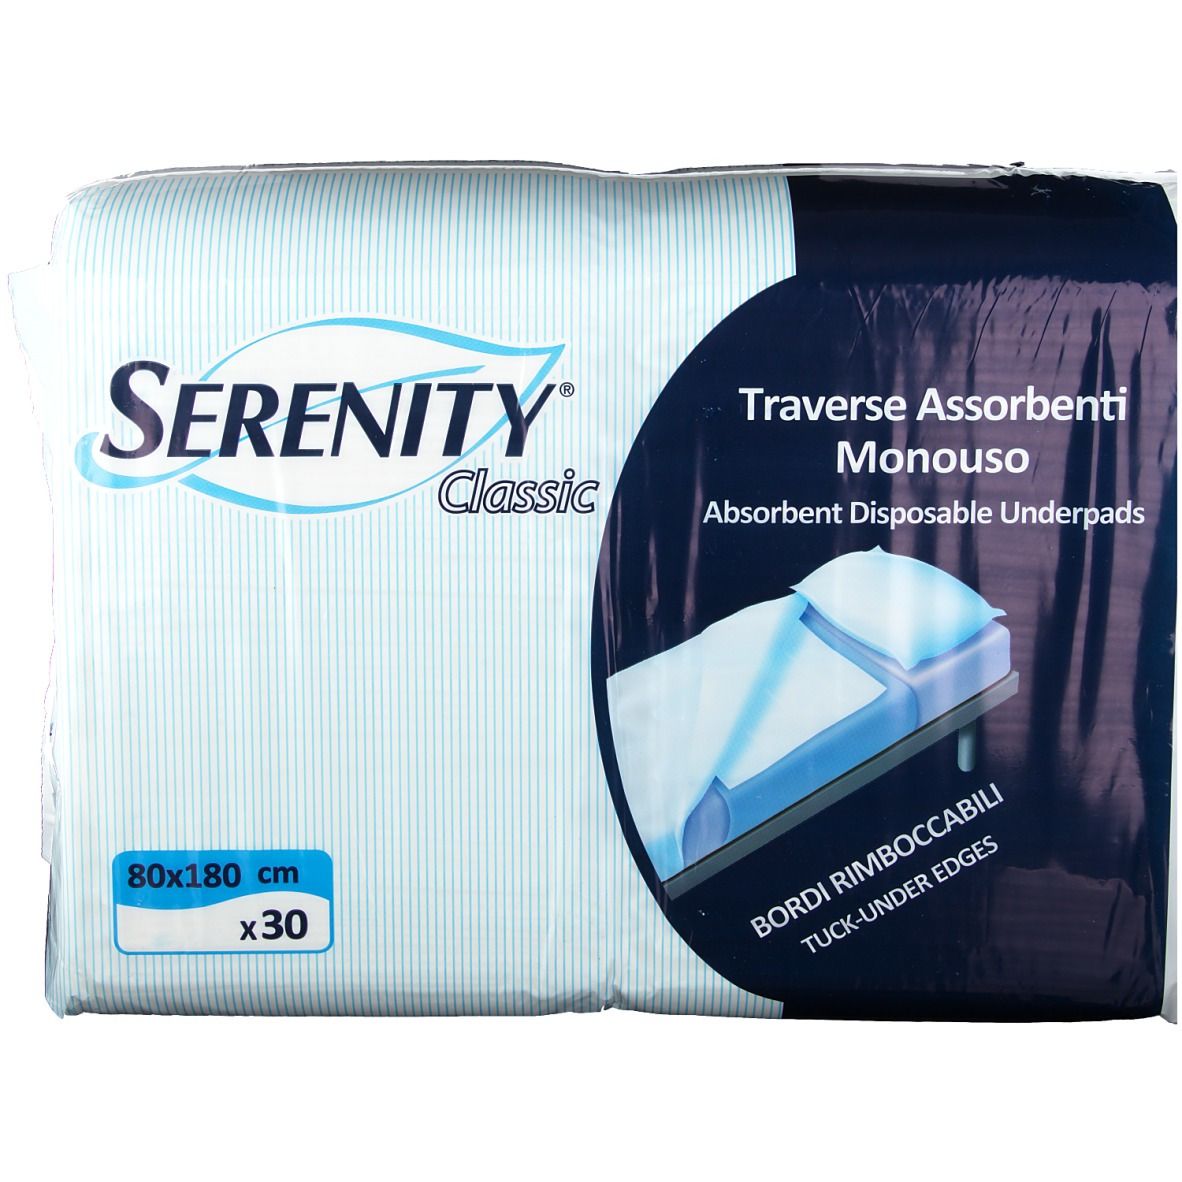 Serenity® Traverse Assorbenti Monouso 80 x 180 cm 30 pz